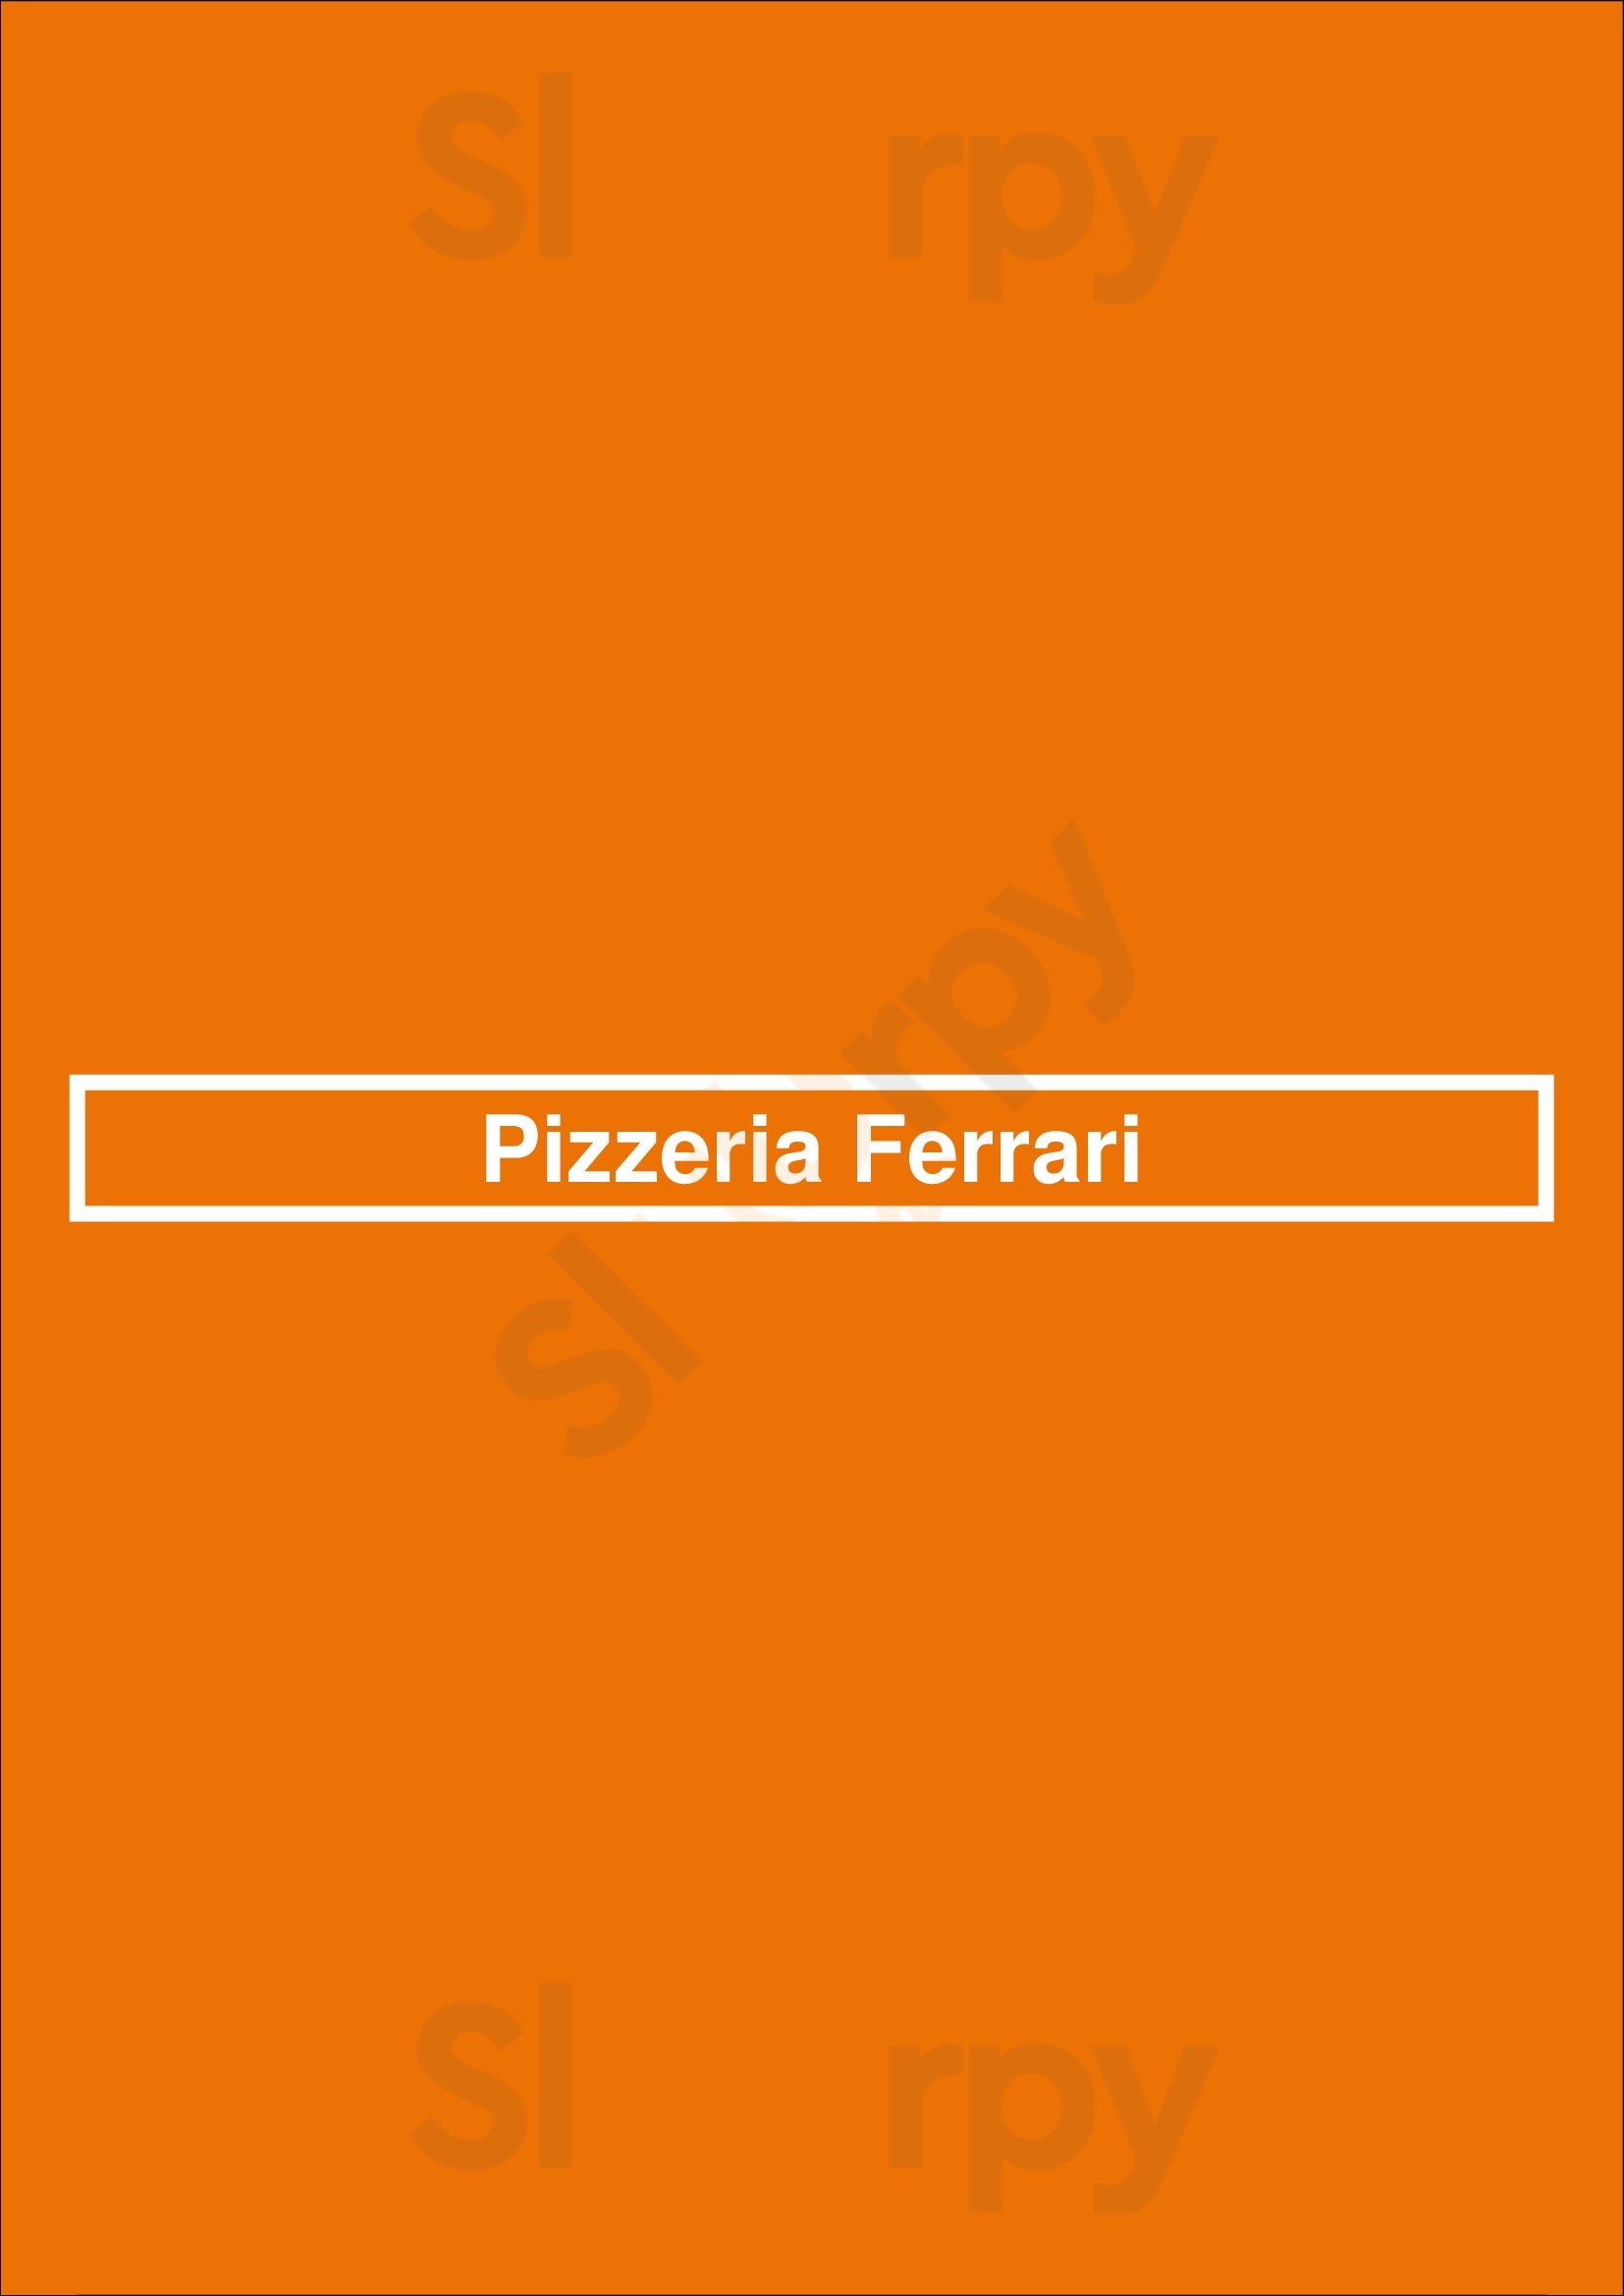 Pizzeria Ferrari Blanes Menu - 1